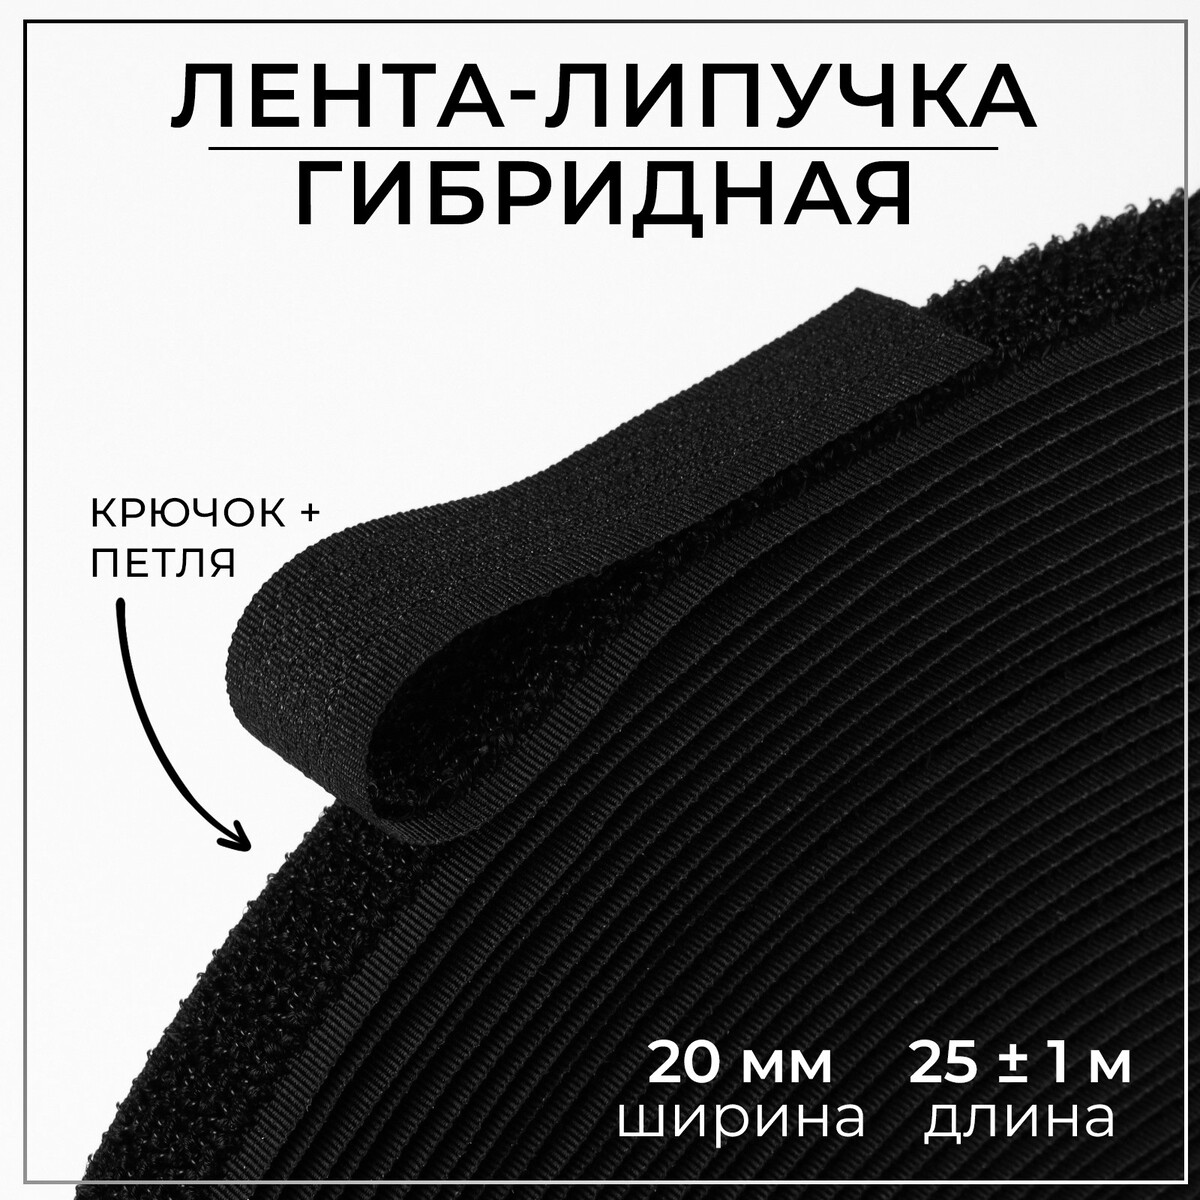 Липучка гибридная, 20 мм × 25 ± 1 м, цвет черный липучка 30 мм × 25 ± 1 м